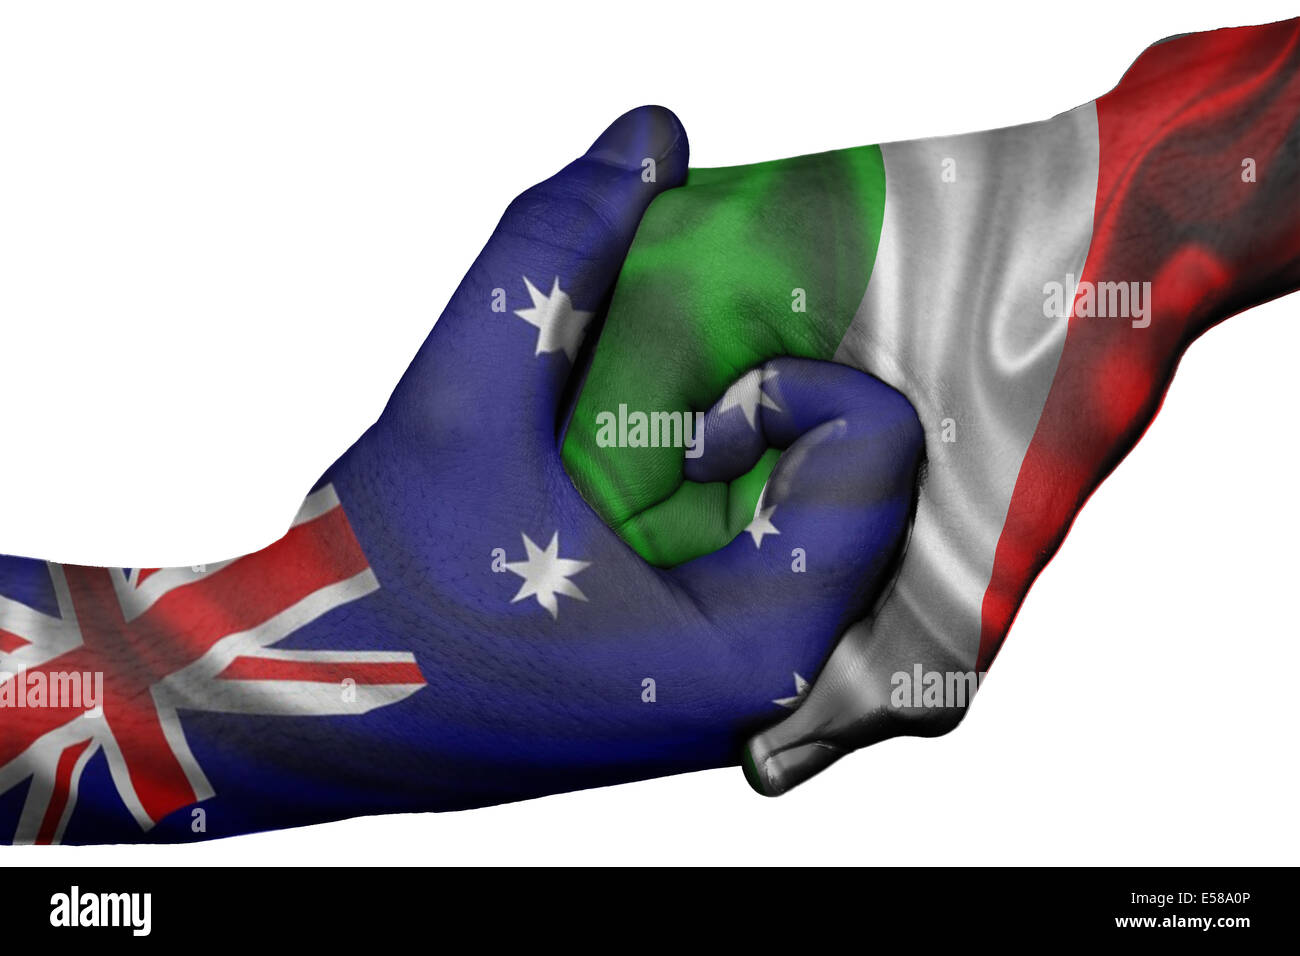 Handshake diplomatiche tra paesi: bandiere di Australia e Italia sovradipinta le due mani Foto Stock